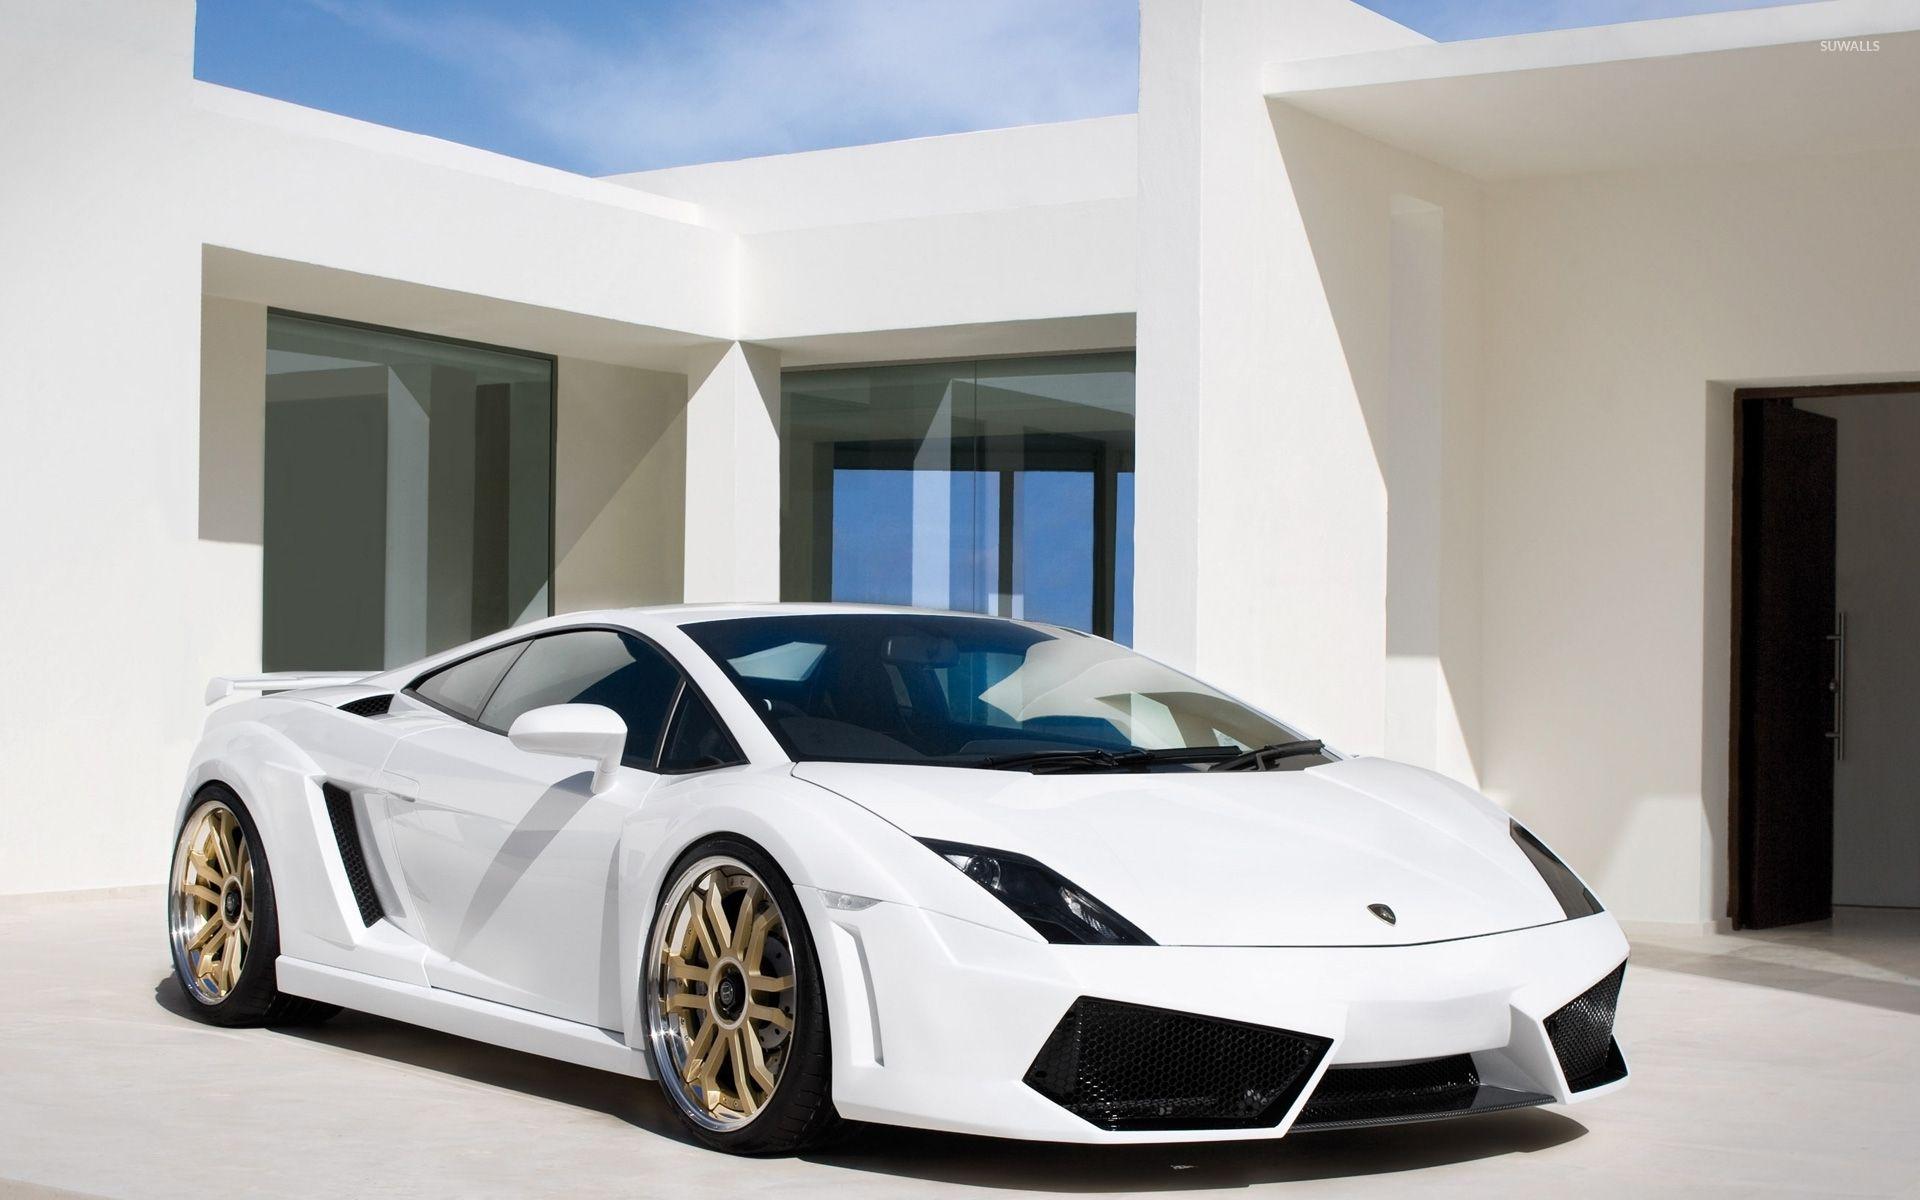 White Lamborghini Gallardo in front of a mansion wallpaper wallpaper